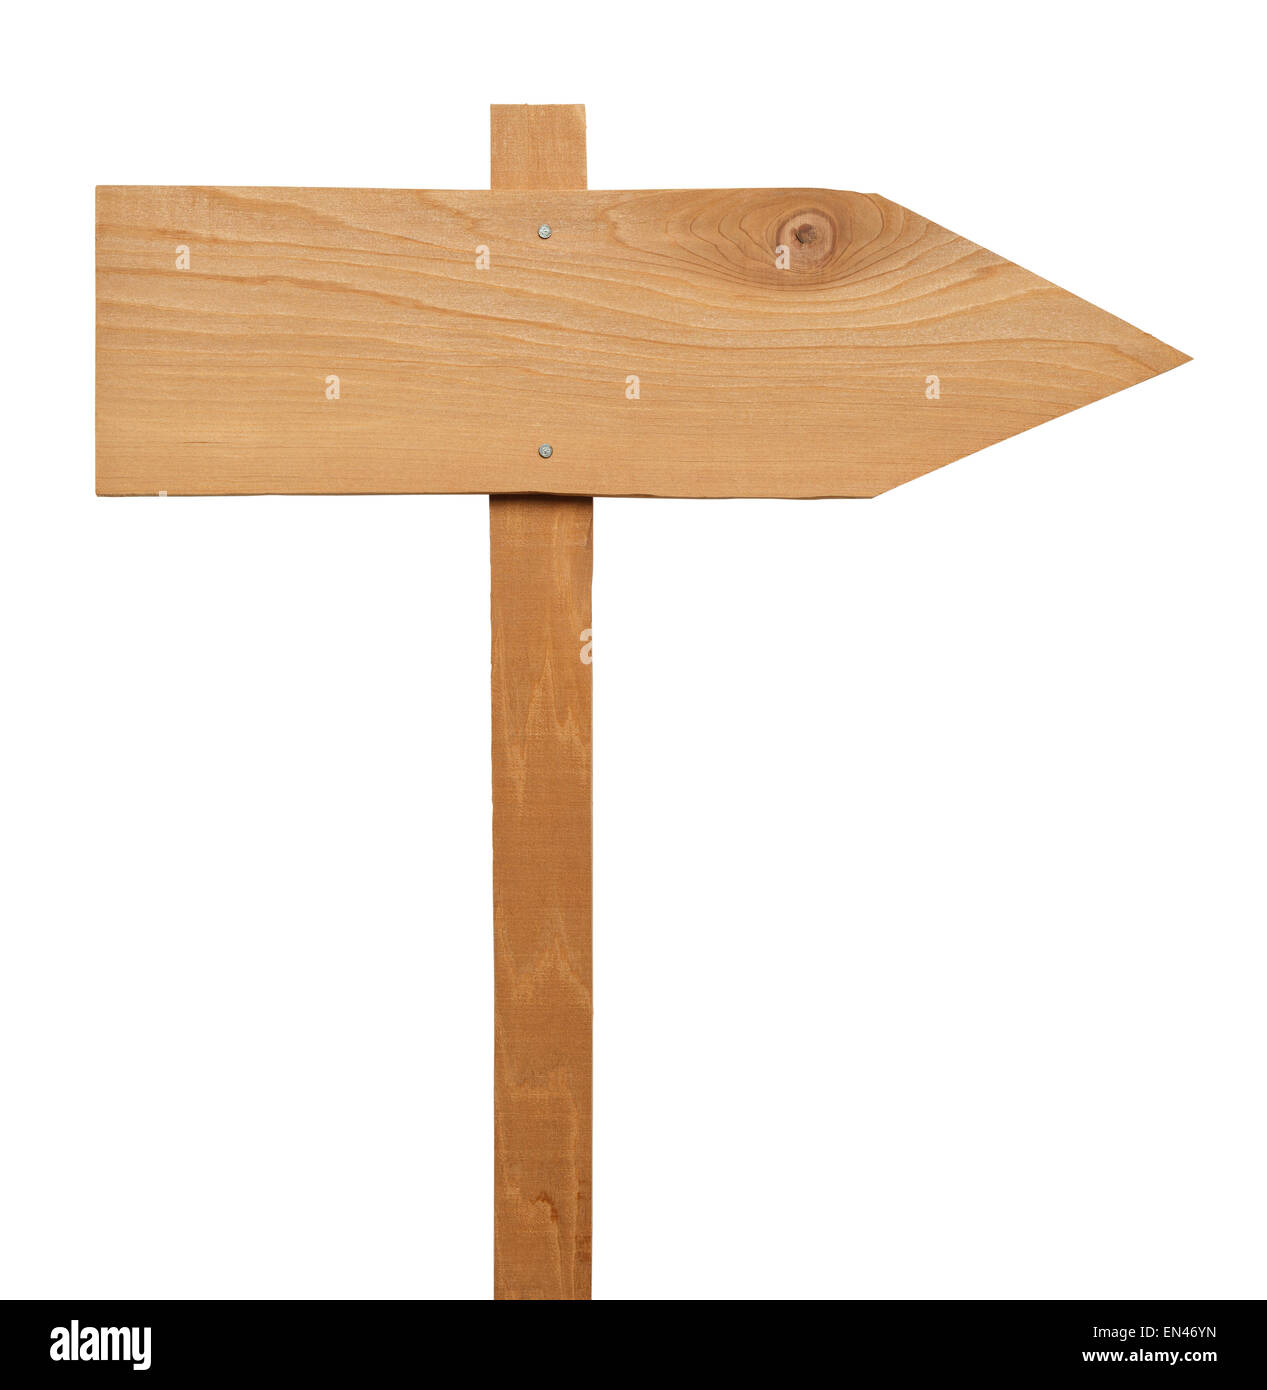 Signo de flecha de madera clavado al Post aislado sobre fondo blanco. Foto de stock